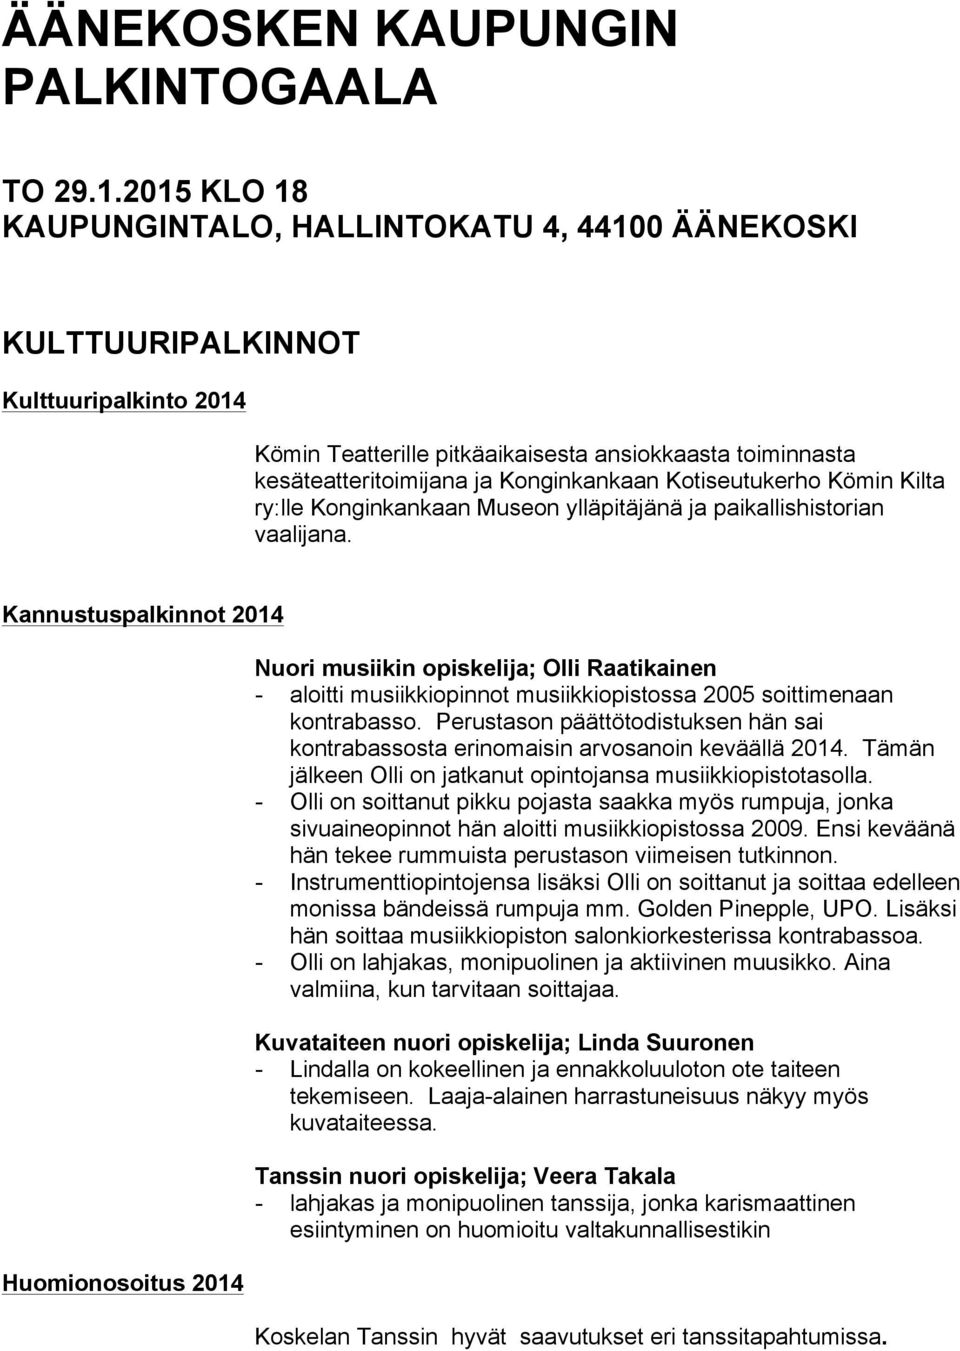 Kotiseutukerho Kömin Kilta ry:lle Konginkankaan Museon ylläpitäjänä ja paikallishistorian vaalijana.